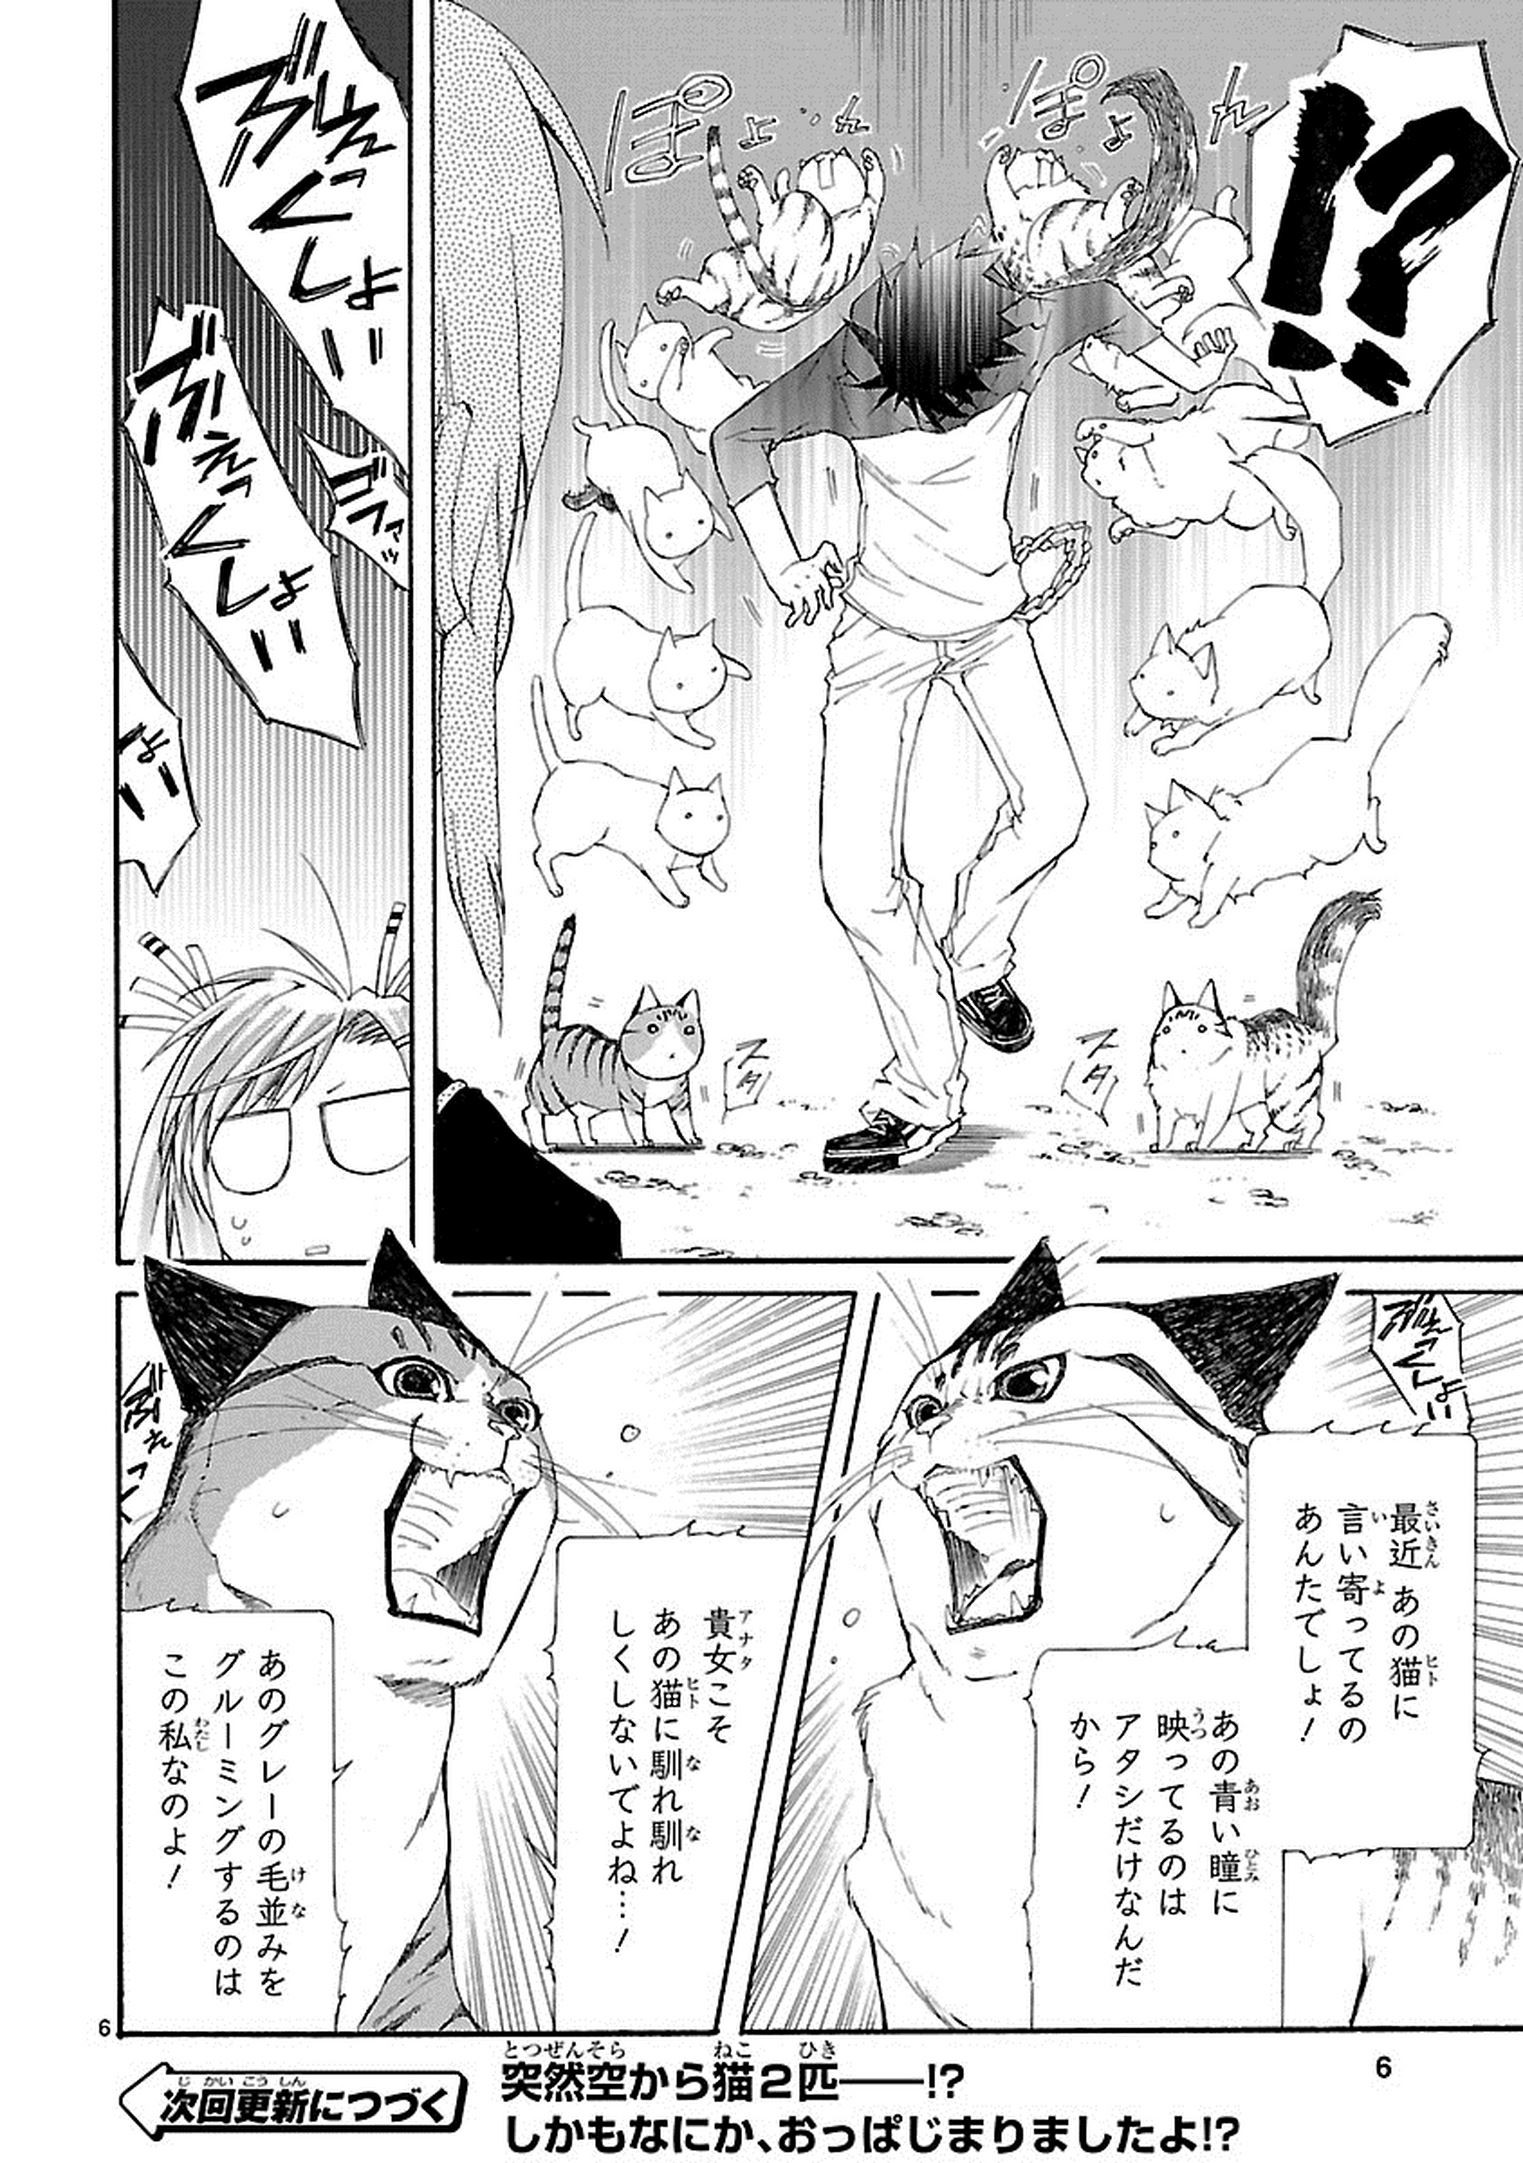 Nyan Koi! - Chapter 26 - Page 6